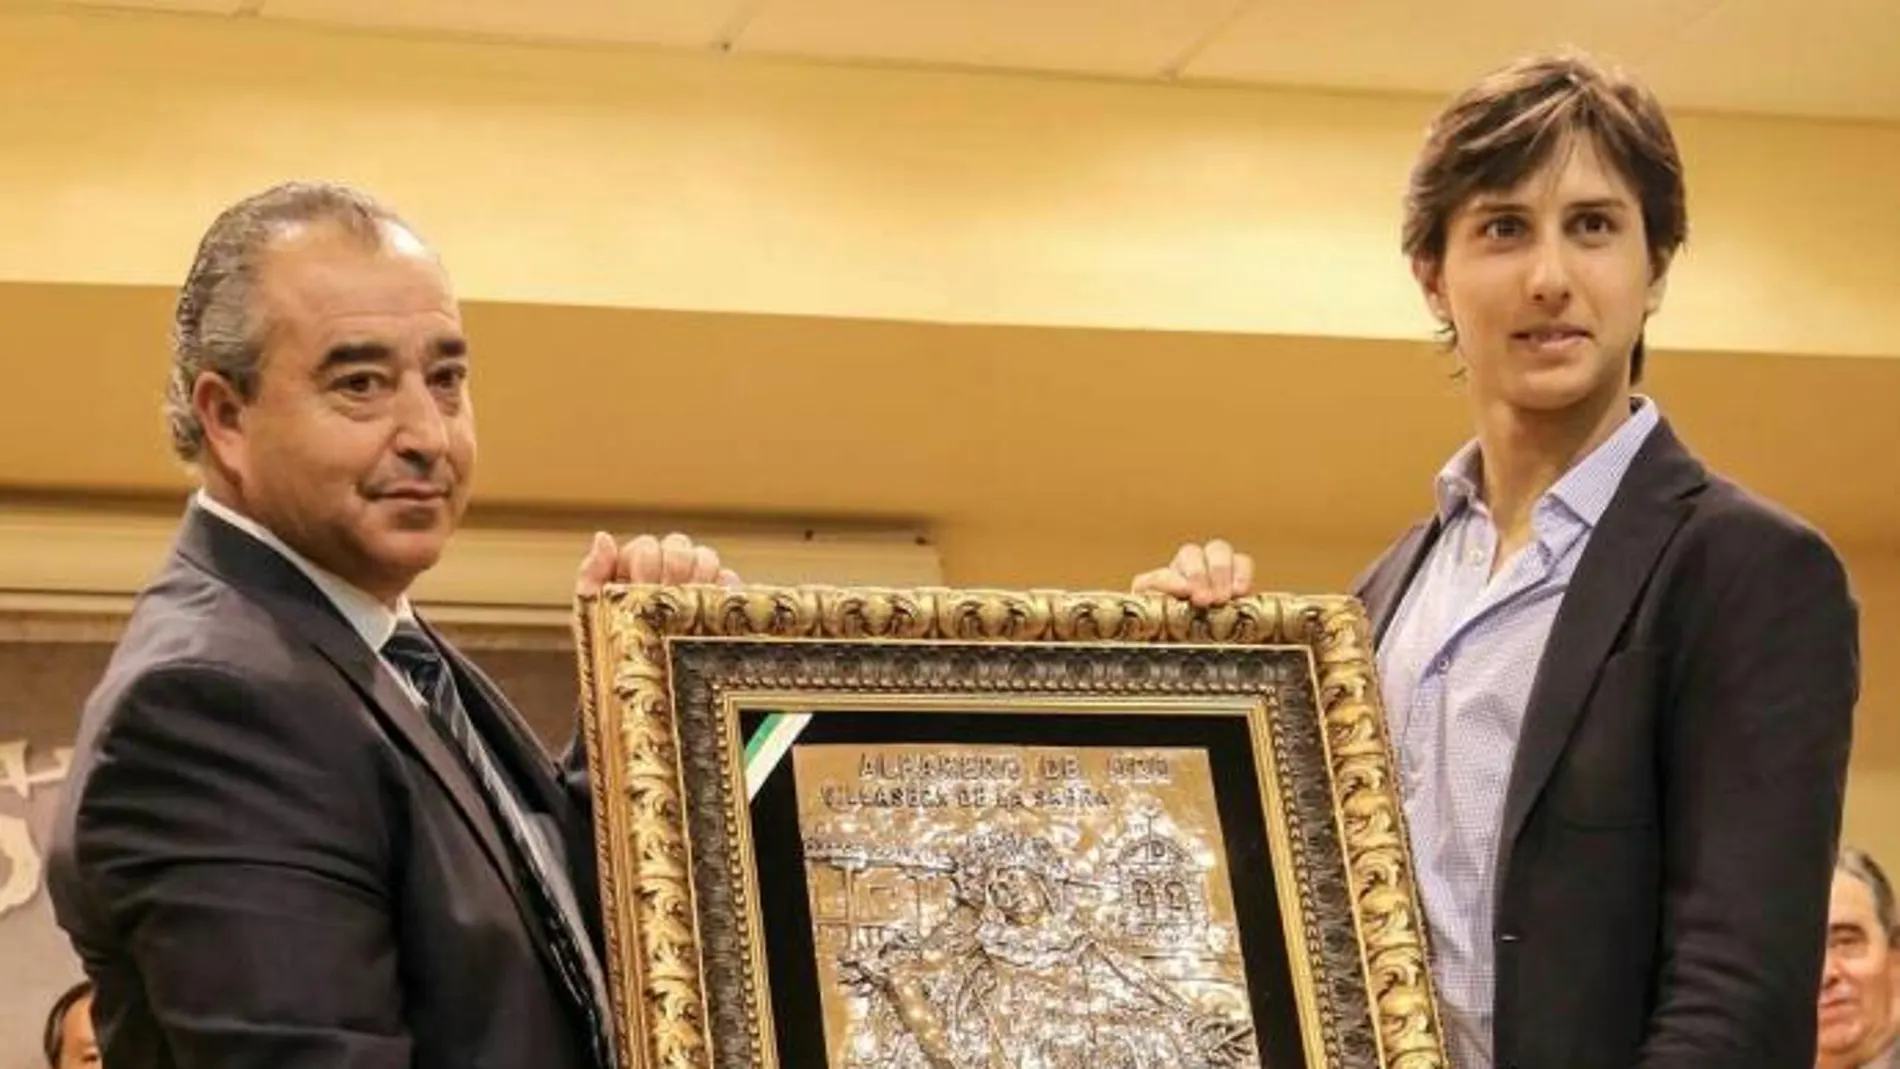 Andrés Roca Rey recibe el galardón del «Alfarero de Oro» de manos del alcalde de Villaseca, Jesús Hijosa